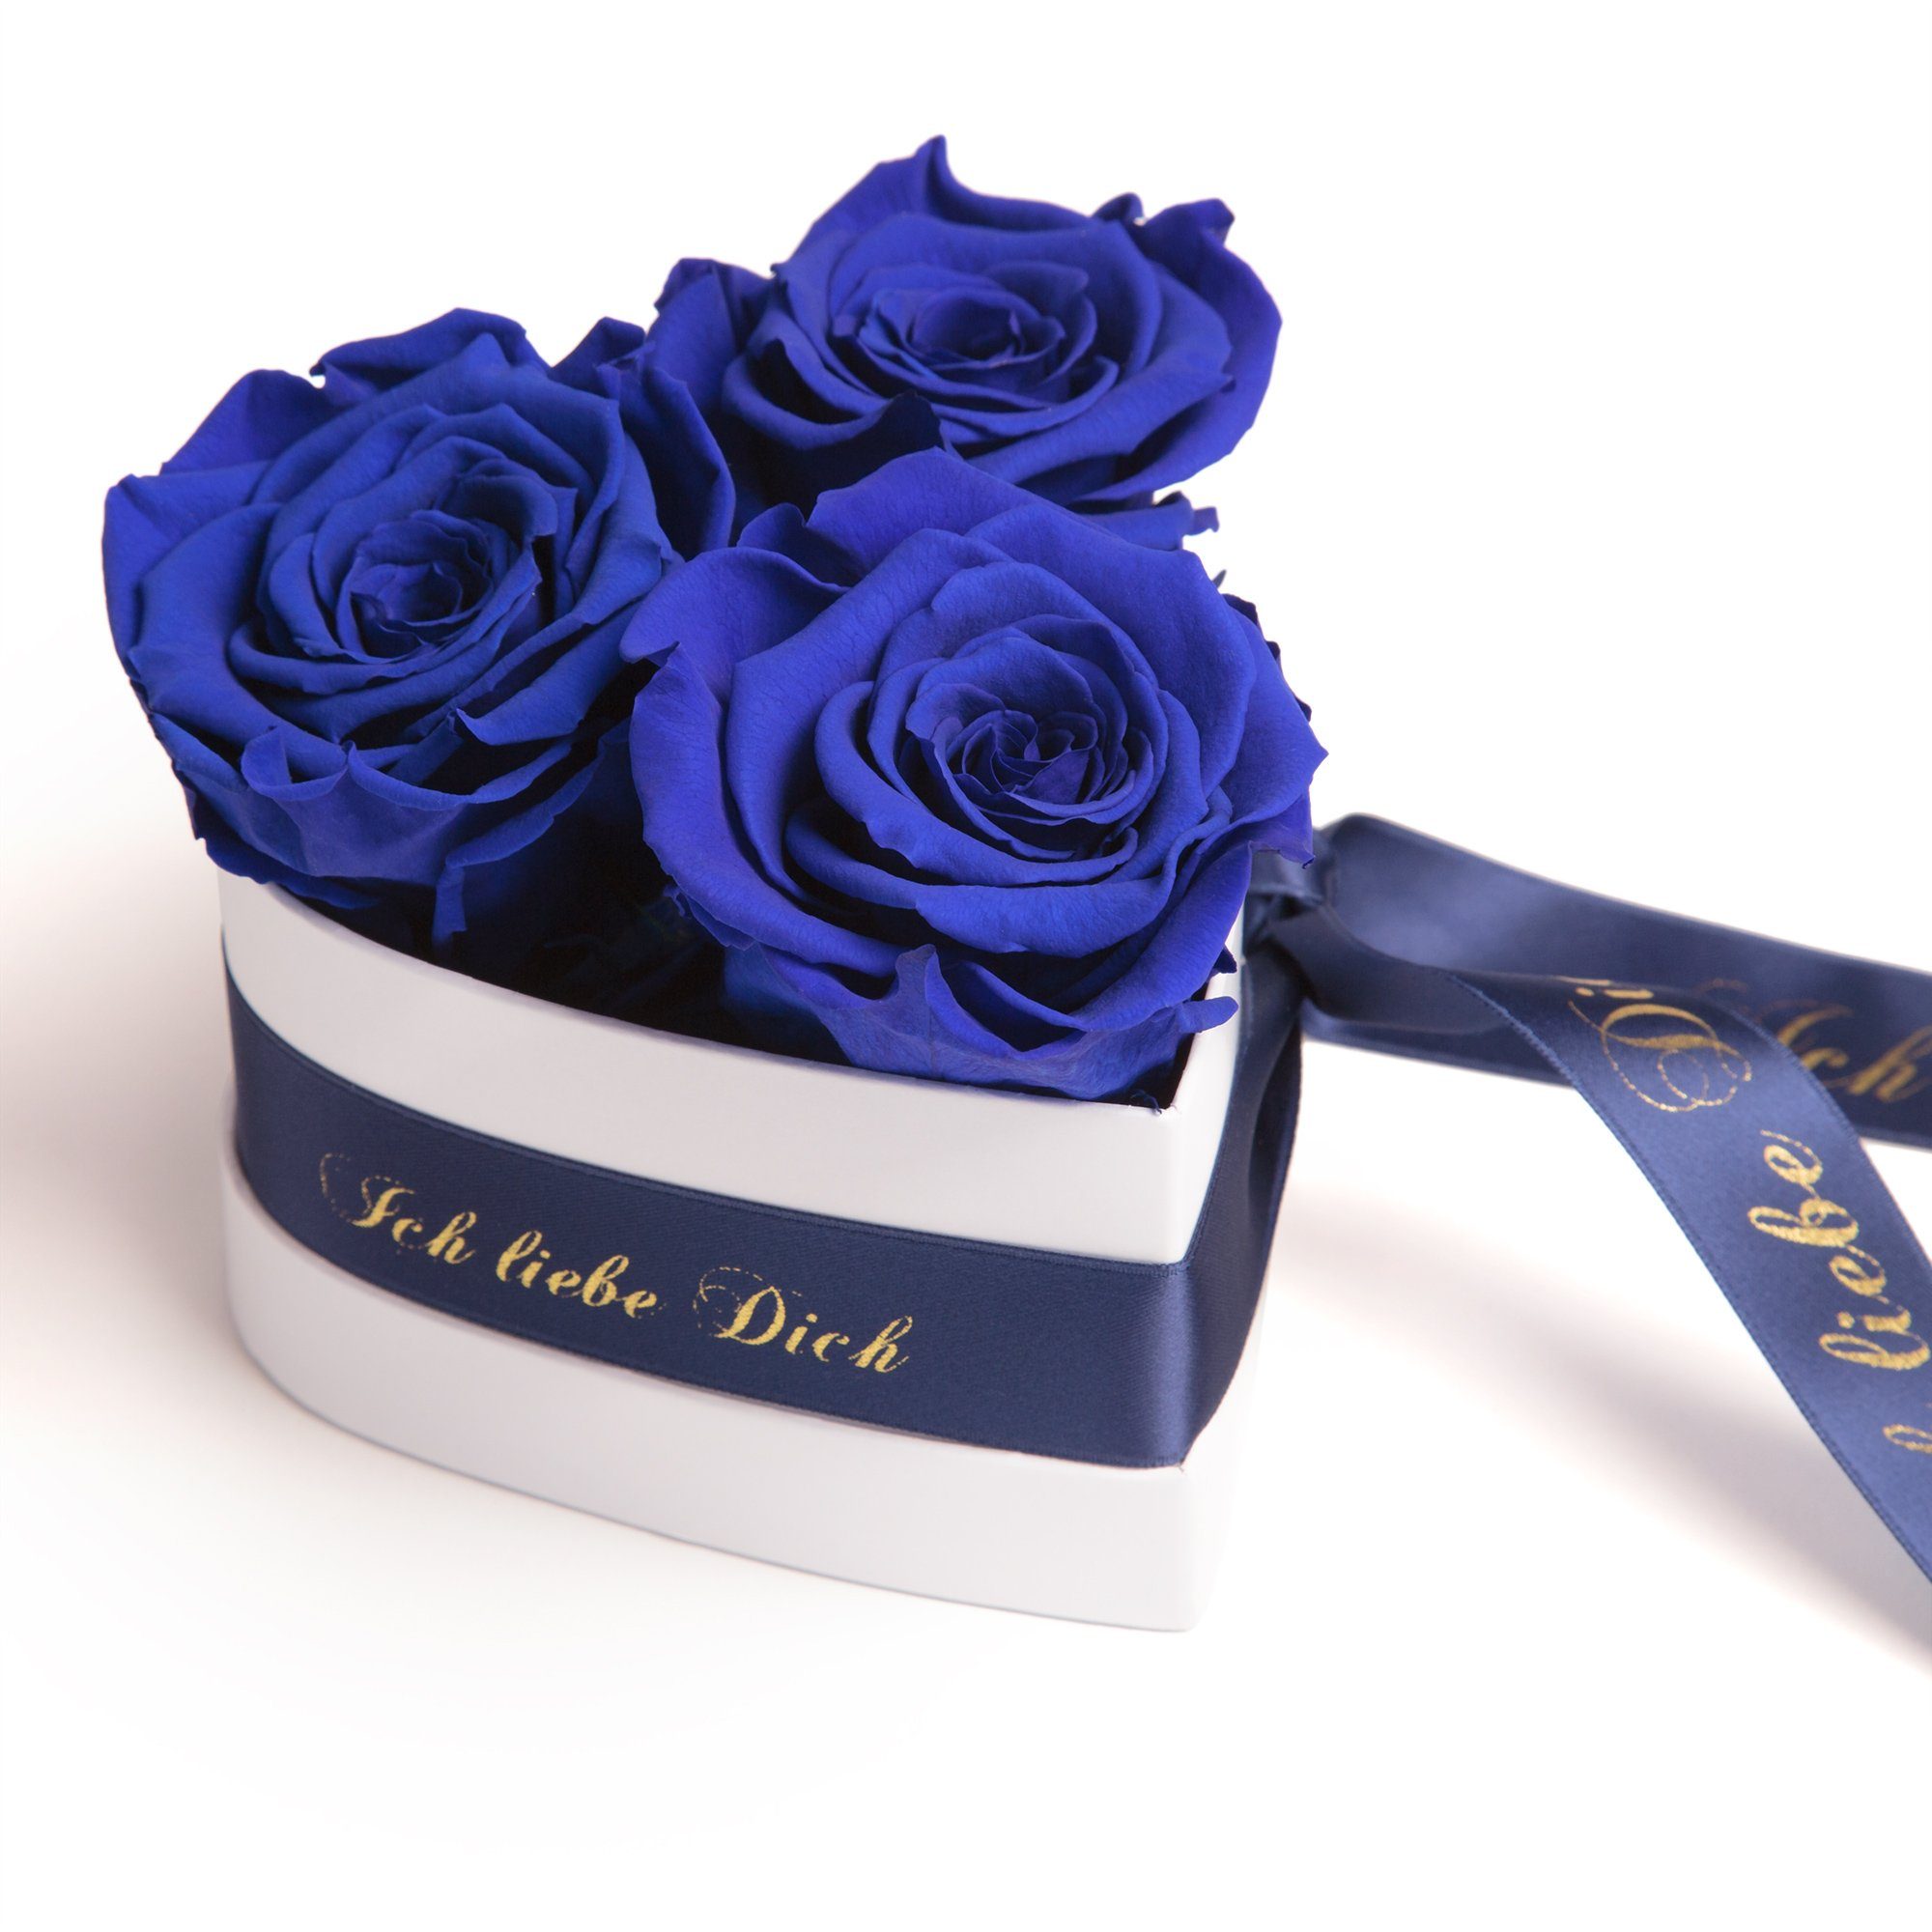 Kunstblume Rosenbox Herz 3 infinity Rosen Ich liebe Dich Geschenk für Sie Rose, ROSEMARIE SCHULZ Heidelberg, Höhe 10 cm, Liebesbeweis Valentinstag blau | Kunstblumen